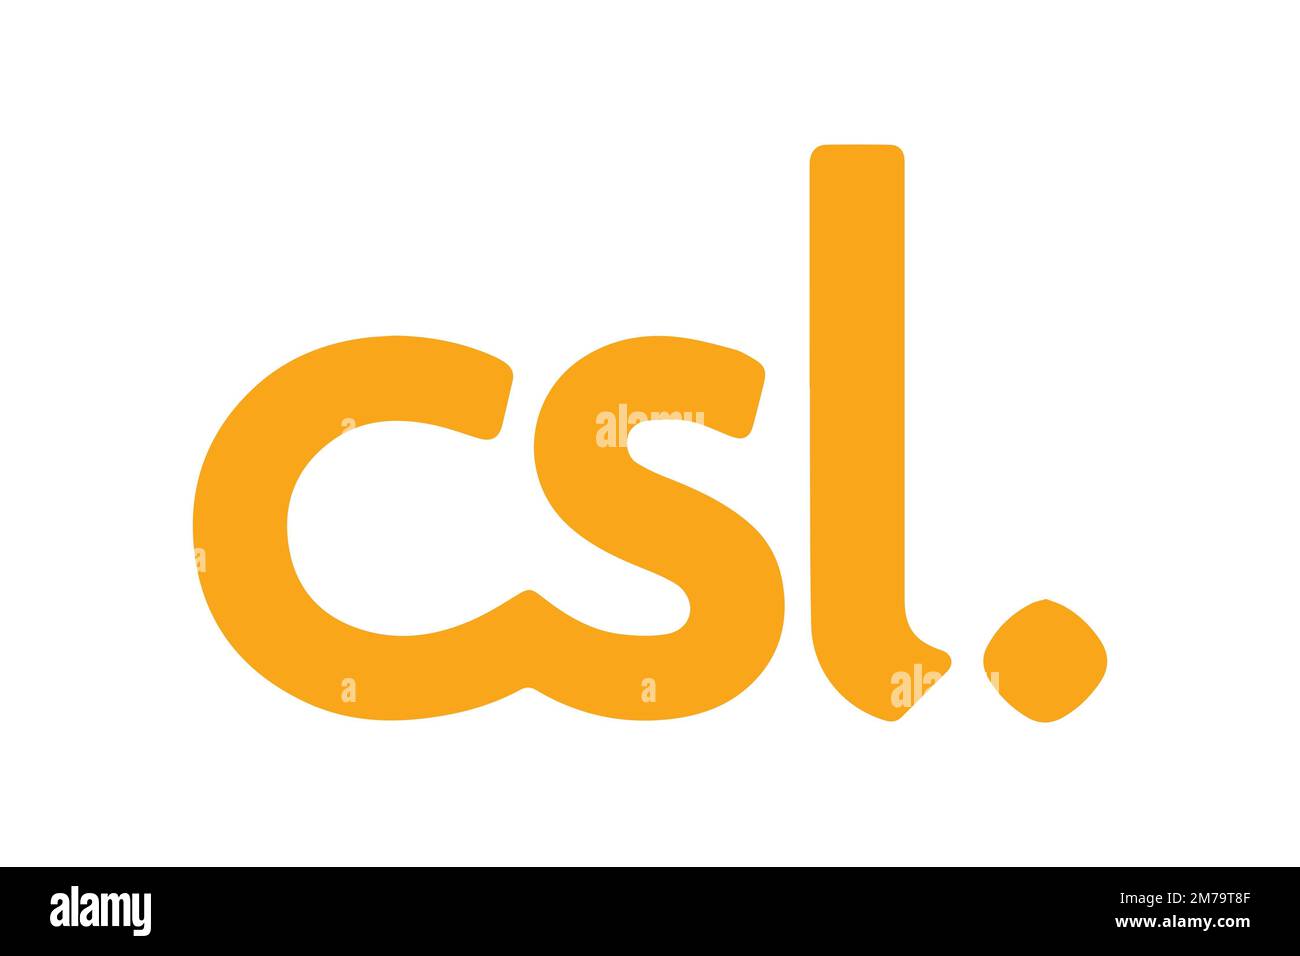 CSL Mobile, logo, fond blanc Banque D'Images